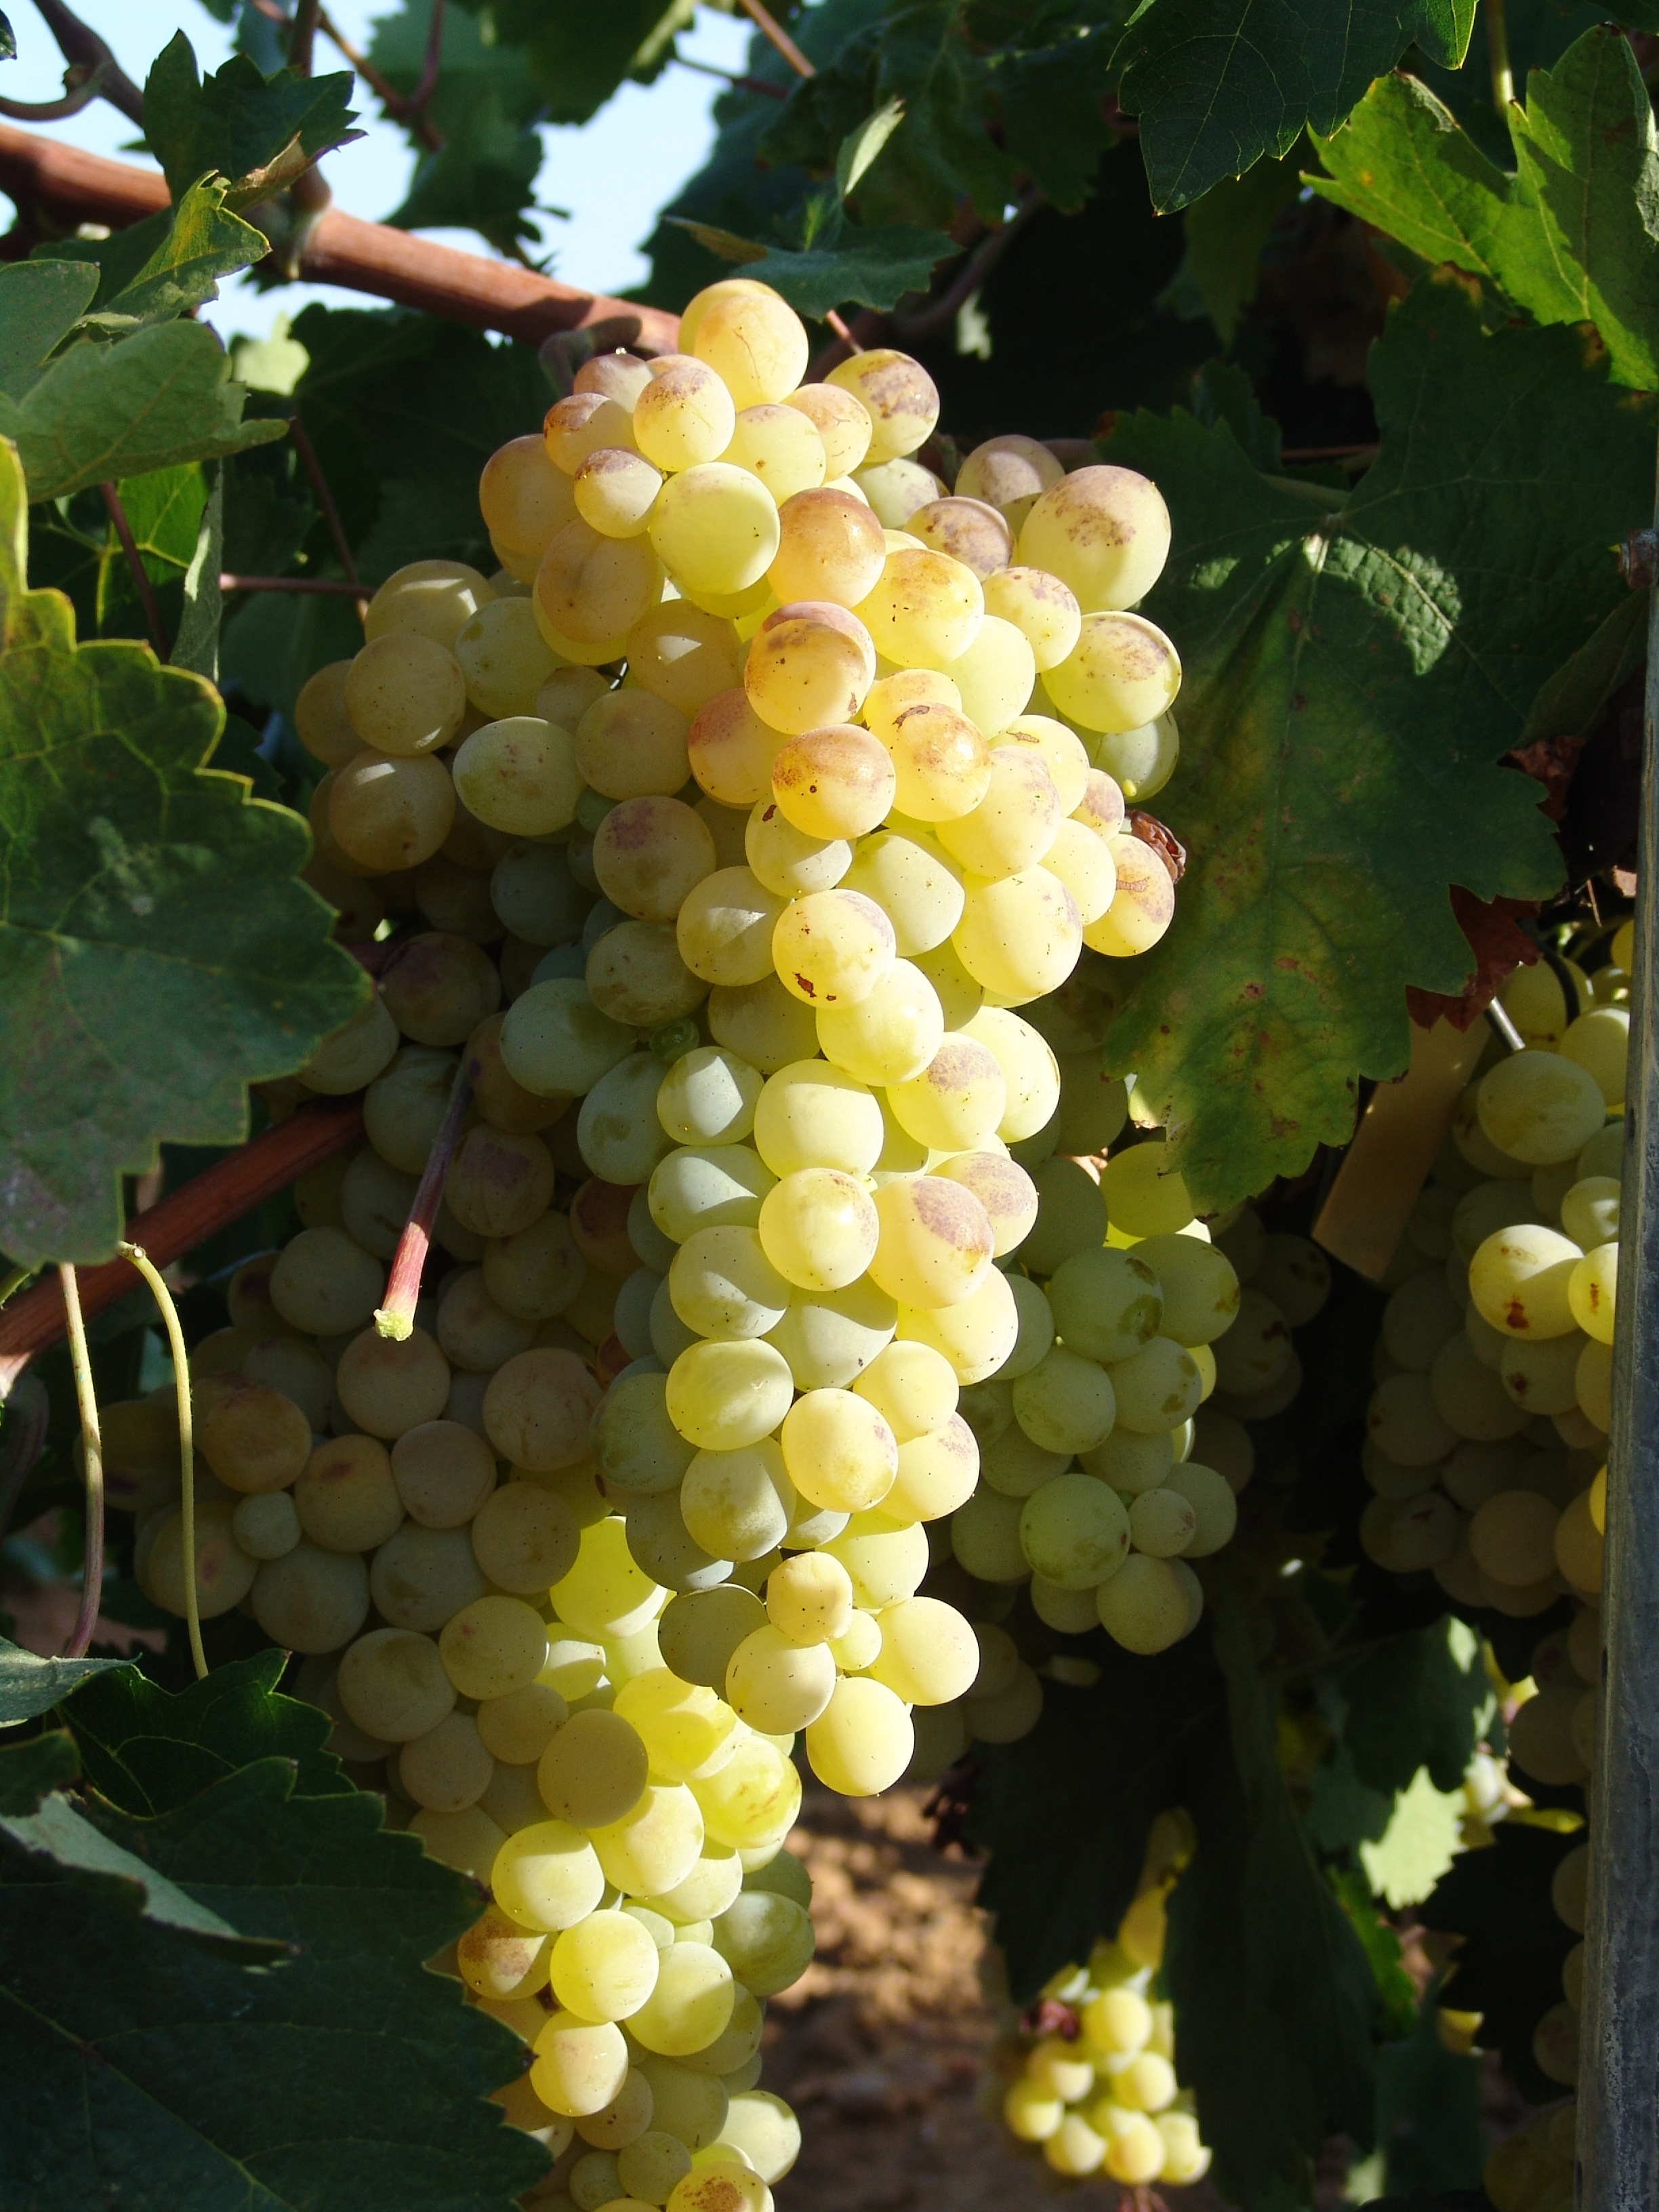 Native grape varieties